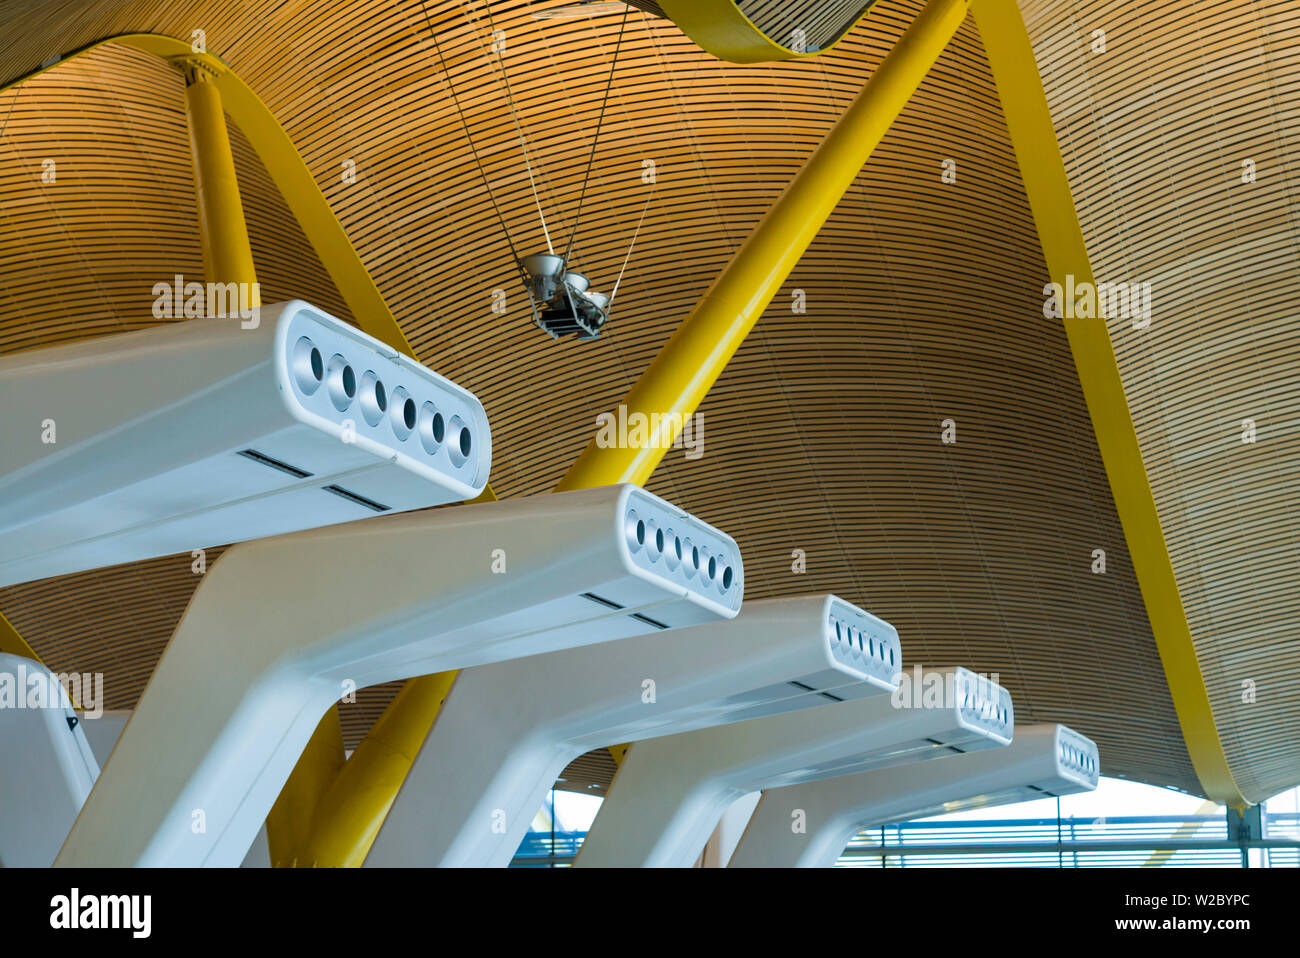 Espagne, Madrid, Adolfo Suarez, l'aéroport de Madrid-Barajas international terminal détail architectural Banque D'Images